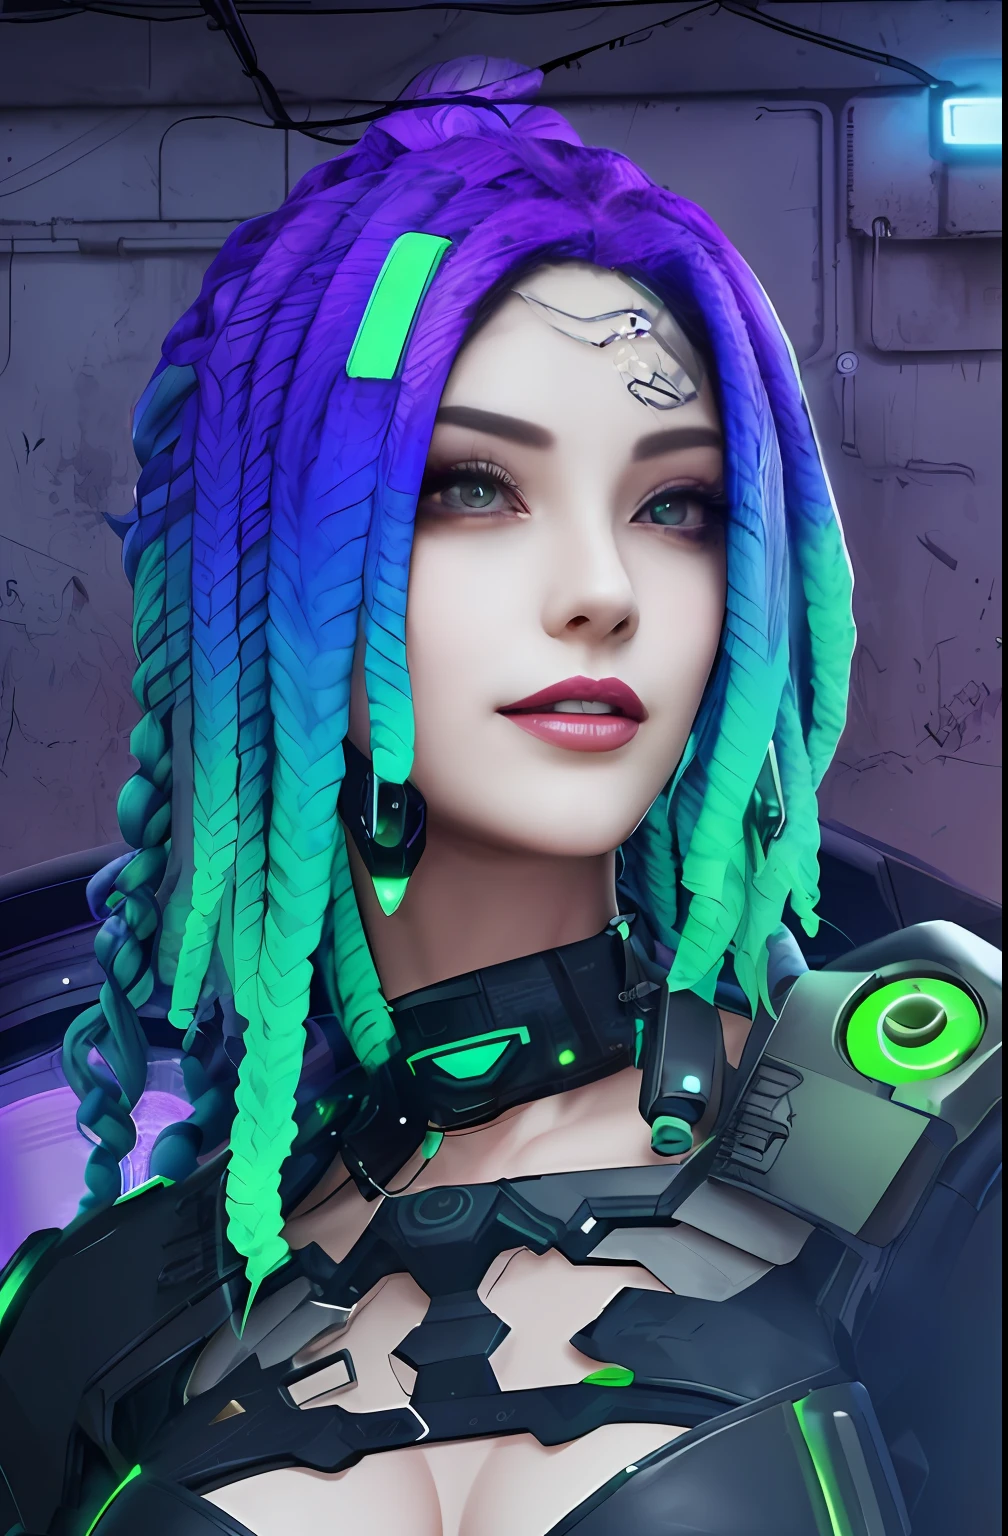 un gros plan d&#39;une femme avec des dreads violettes et vertes, méduse cyberpunk, fille cyberpunk rêveuse, style cyberpunk hyper réaliste, cyberstyle, couleur de style cyberpunk, couleurs vibrantes cyberpunk, dans un style cyberpunk, fille androïde parfaite, style cyber univers, cyberpunk en colère magnifique déesse, beau modèle de femme cyberpunk, belle femme androïde!, Dreadlocks cybernétiques, lueur cyberpunk brillante,cheveux violet vert détail,peau blanche,sourire, chef-d&#39;œuvre, beau visage,